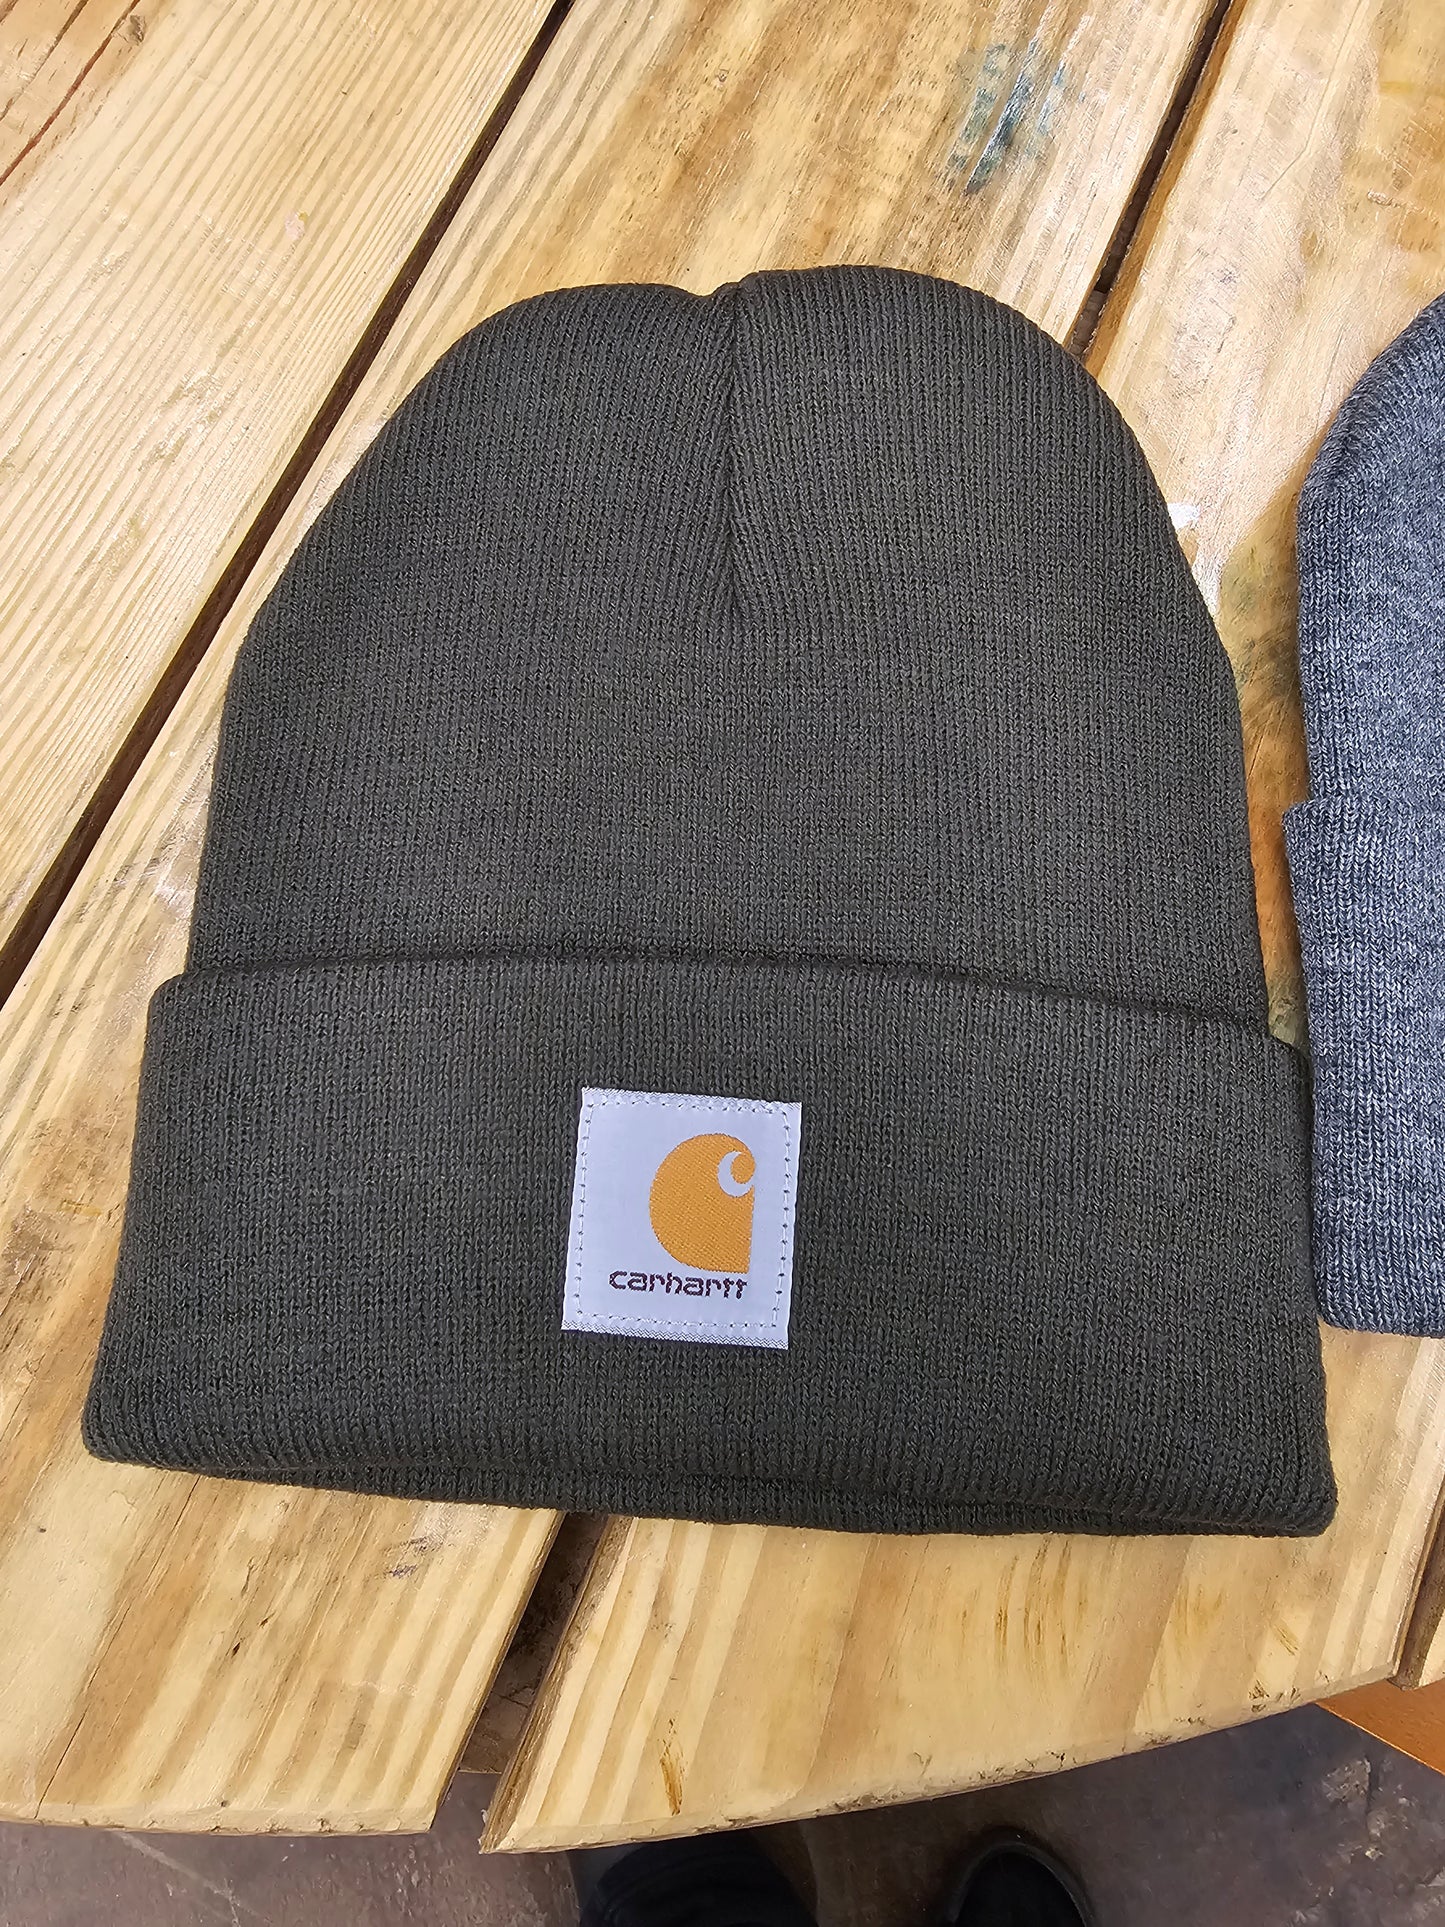 Carhart Knit Hats/Beanie